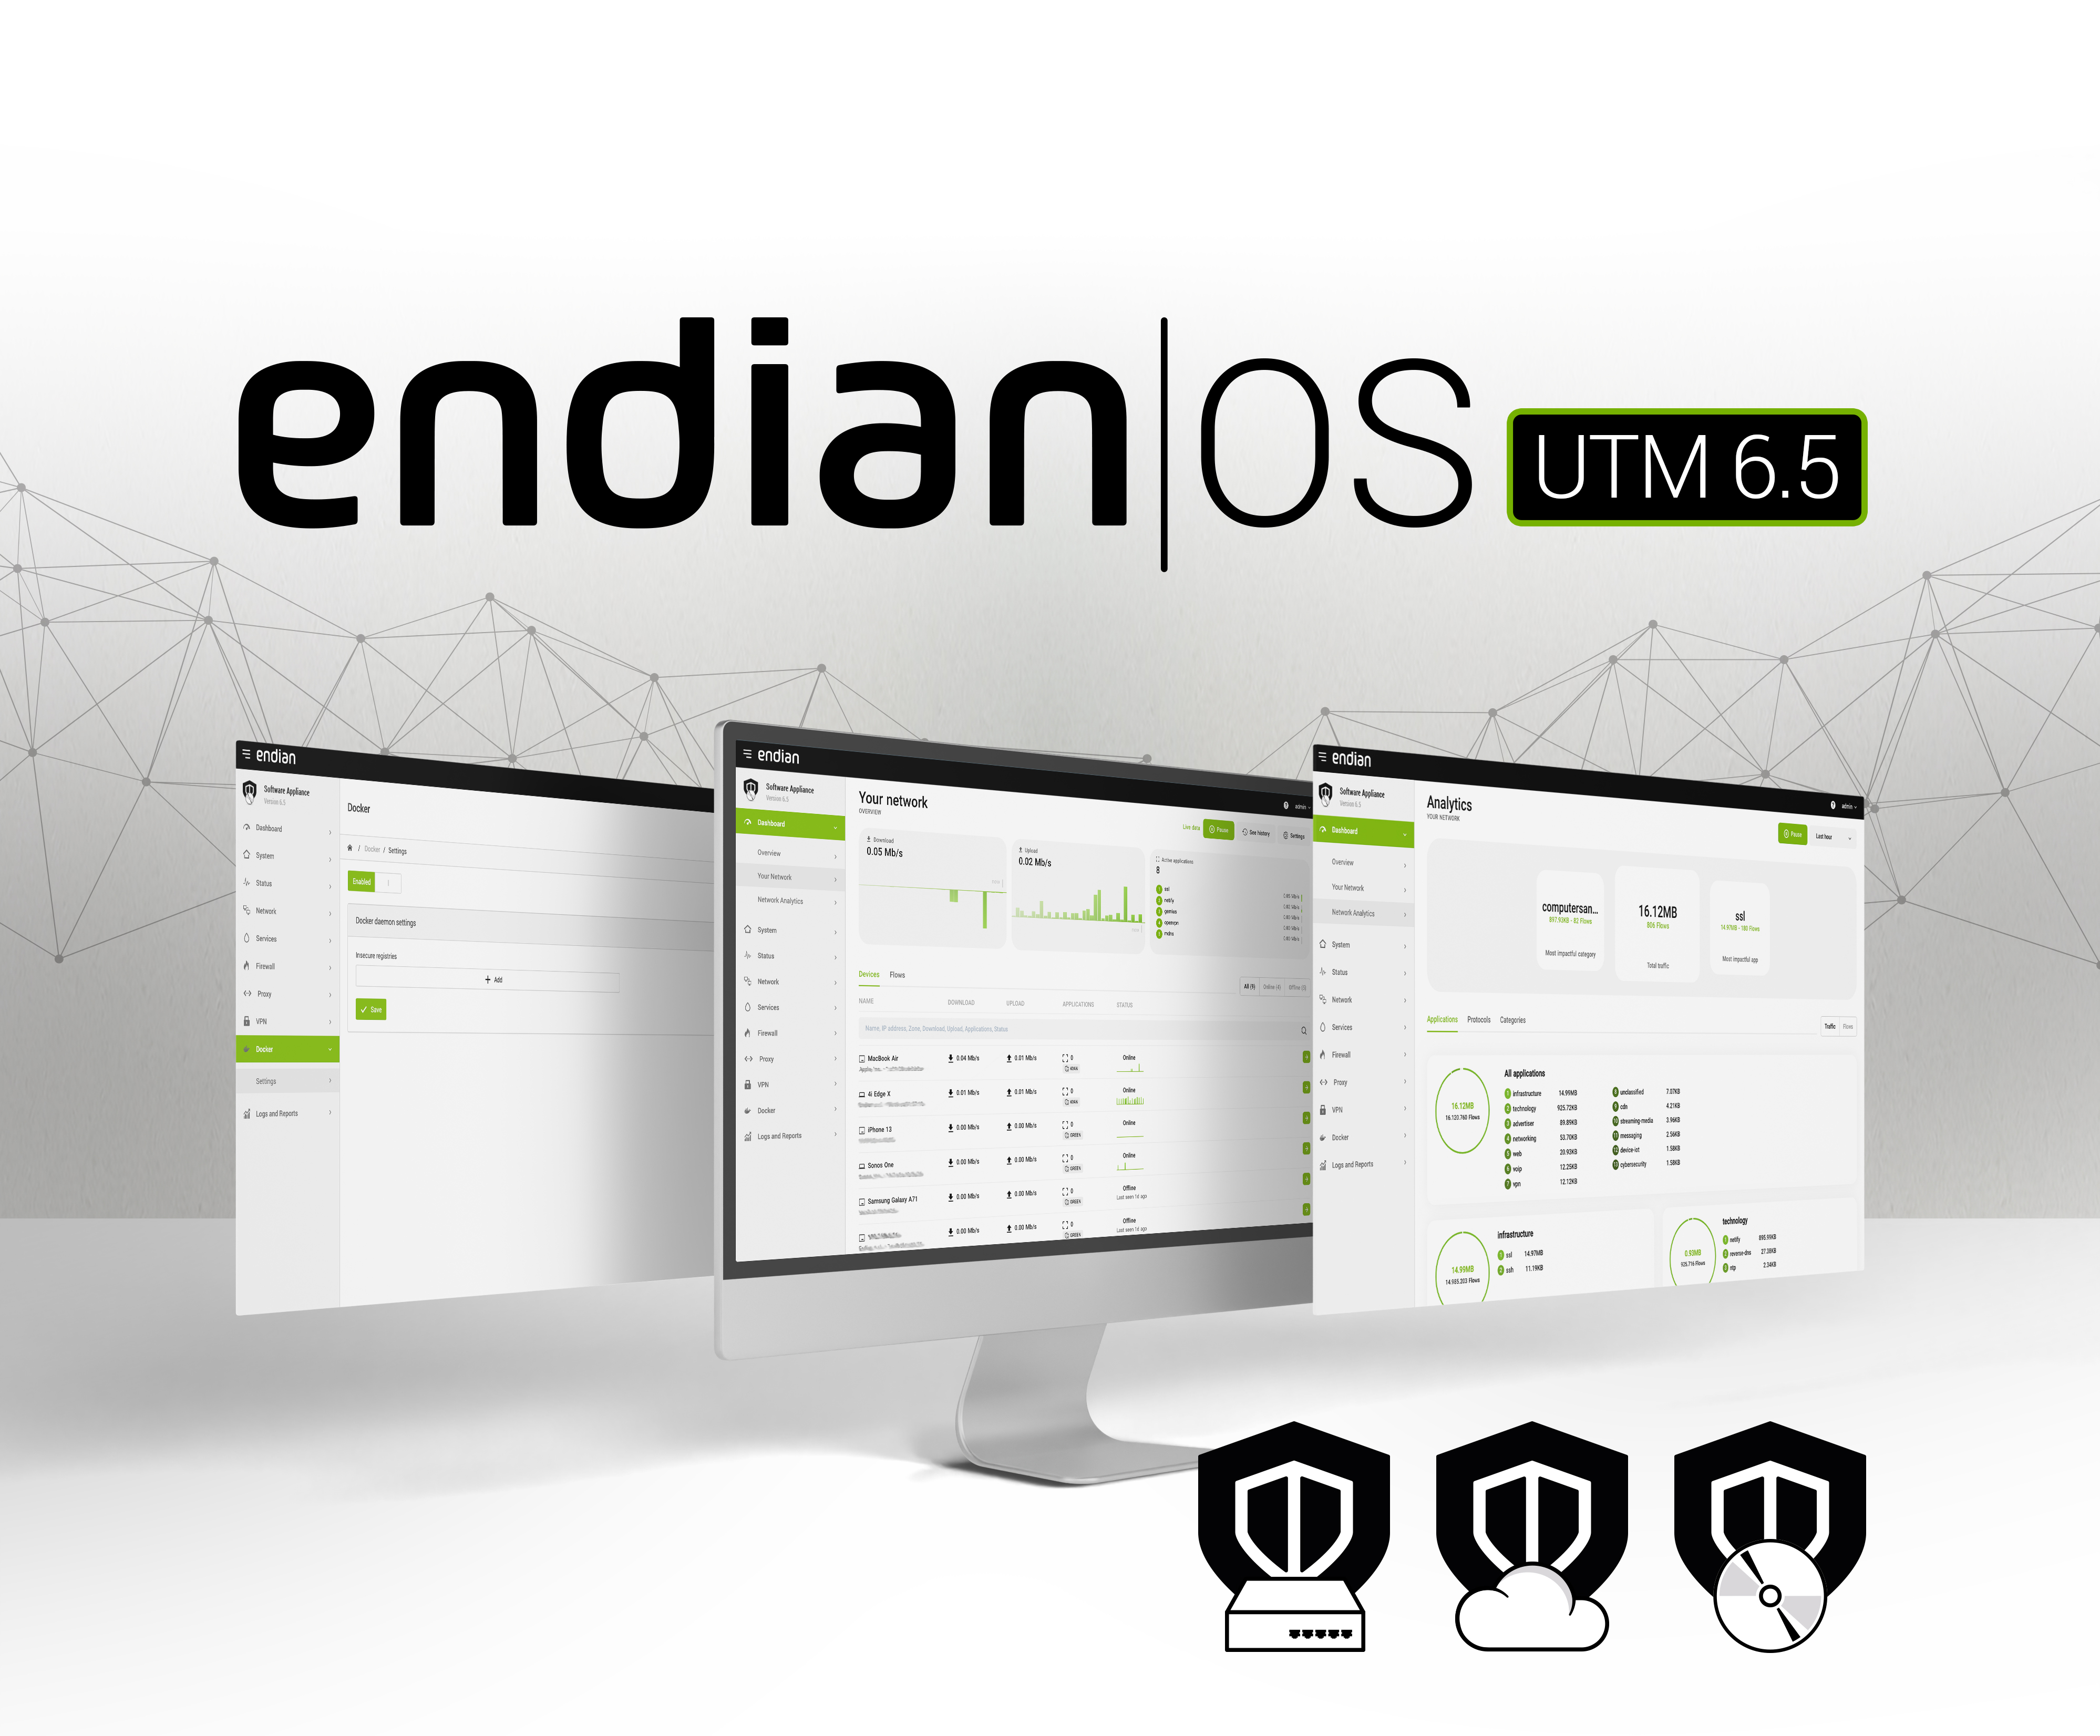 endian_OS_UTM_6-5_02.jpg